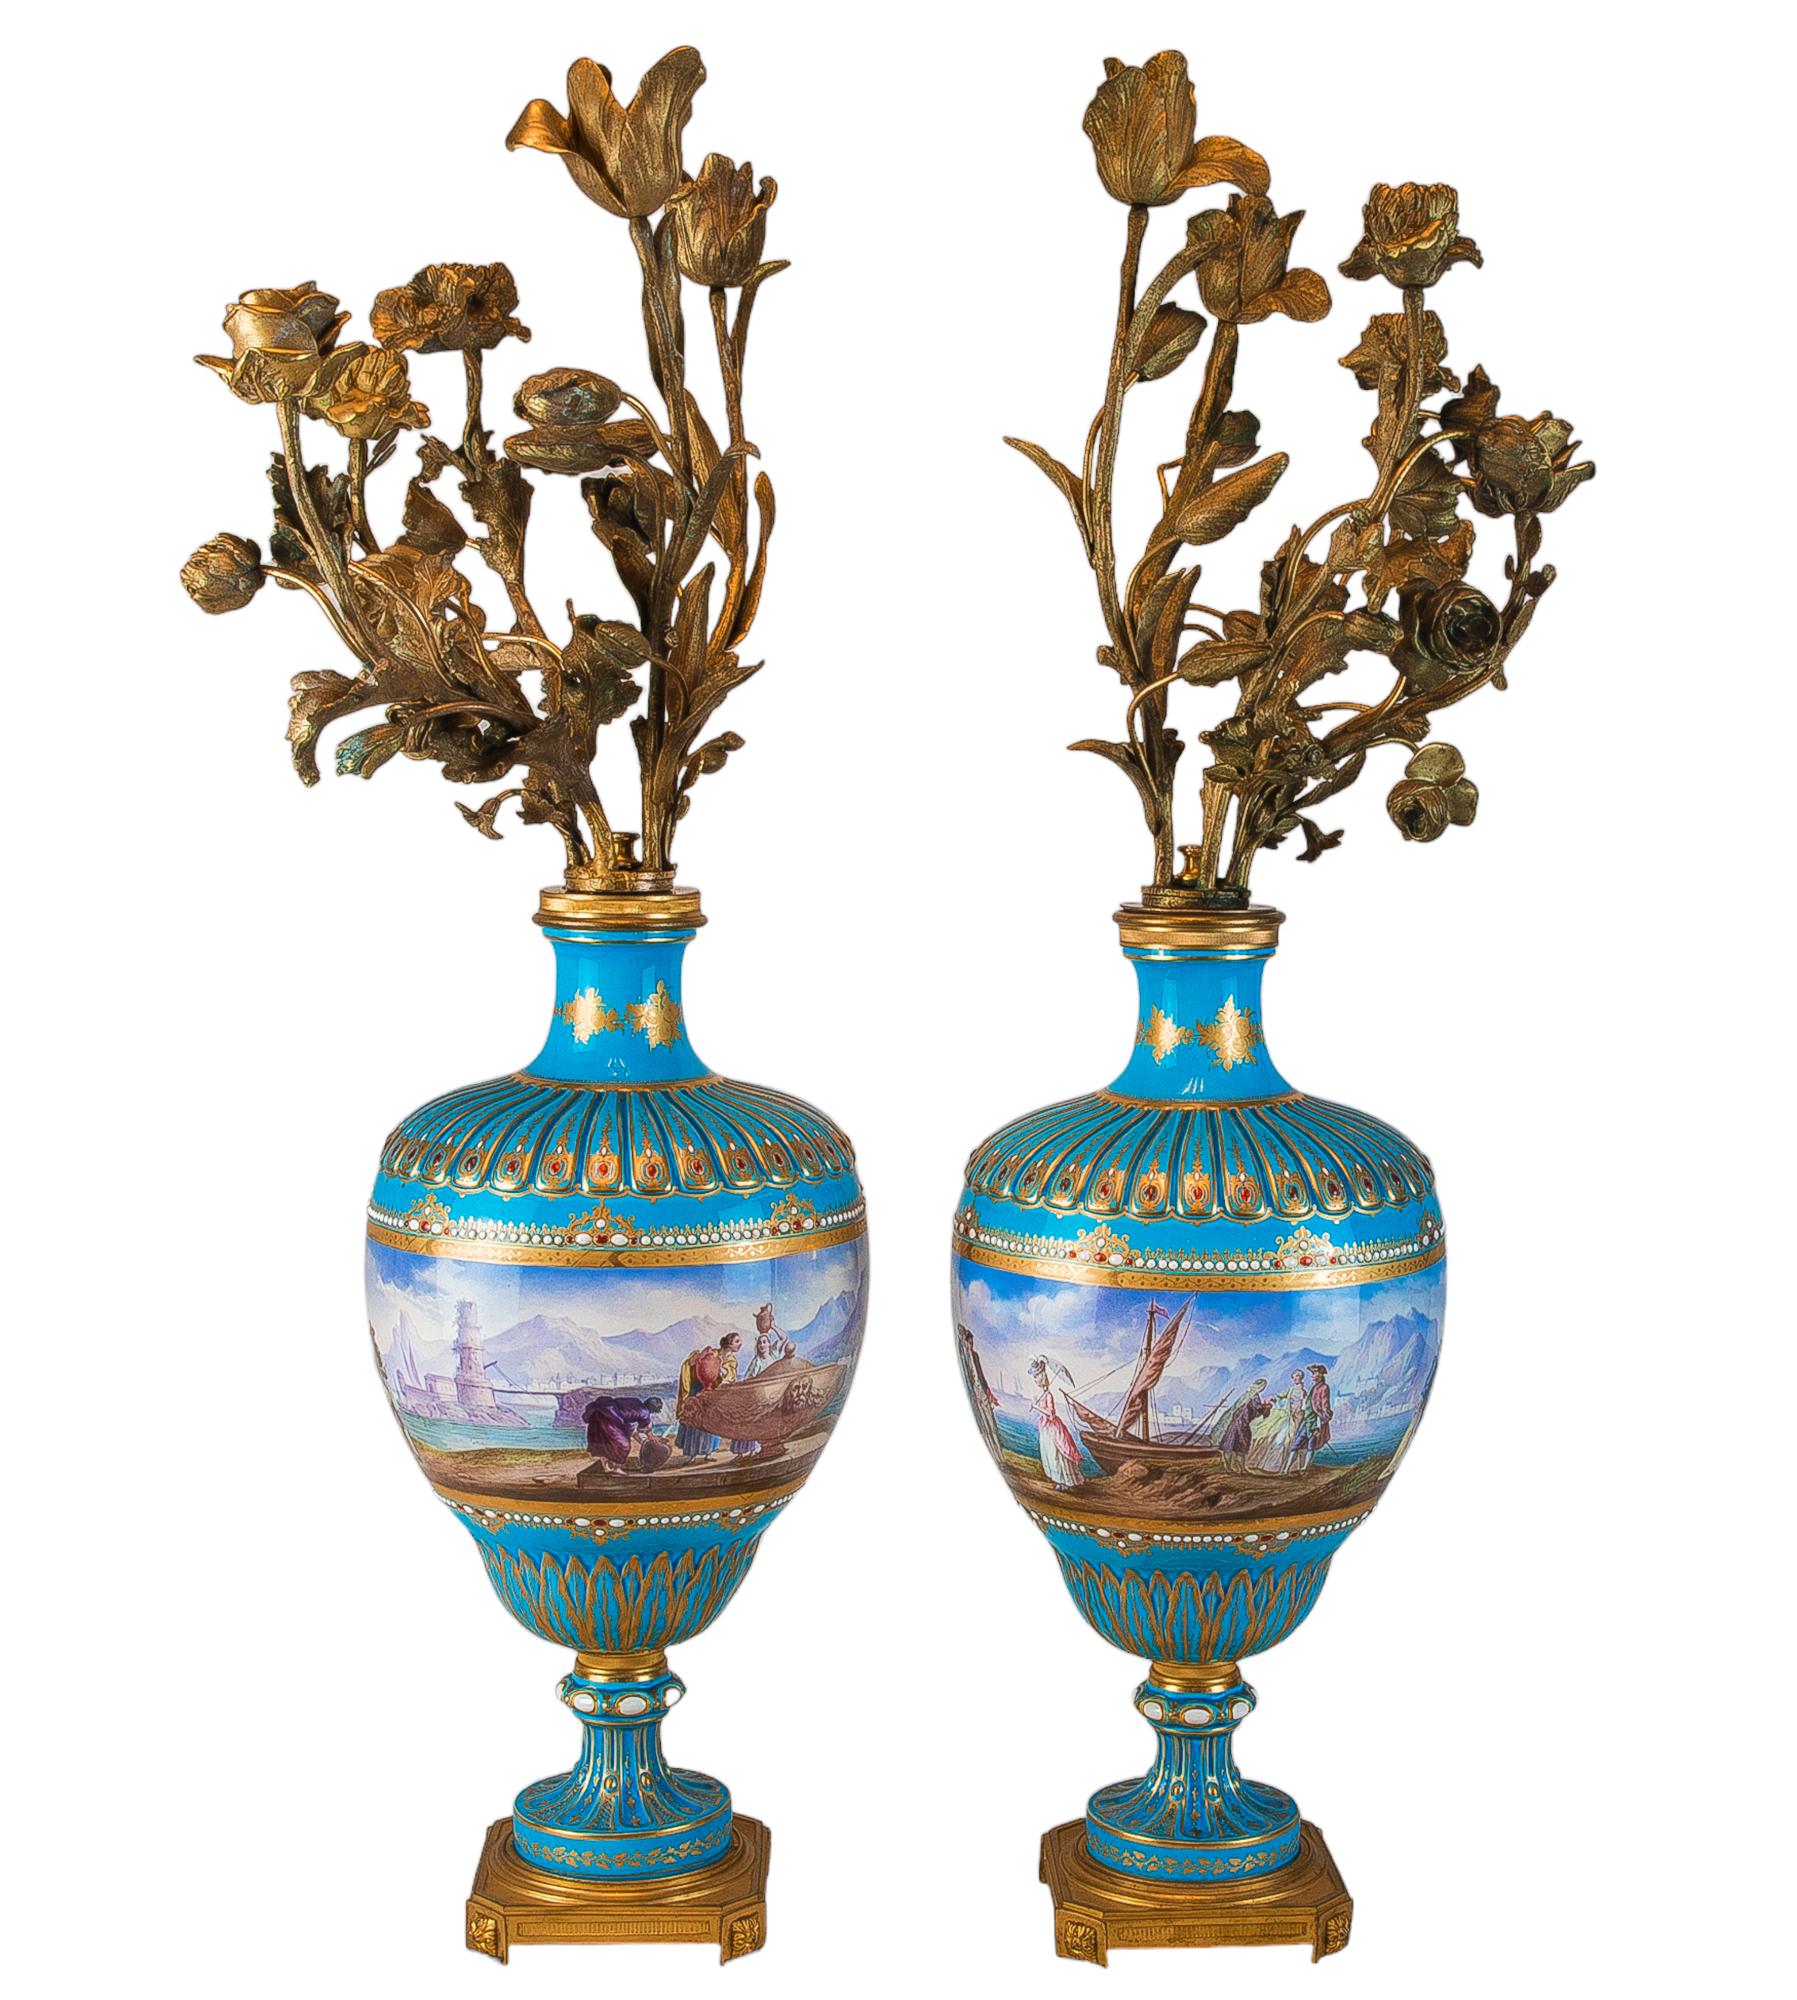 Ein großartiges Paar sérvesartiger türkisfarbener Bildervasen, montiert als fünfflammige Bouquet-Kandelaber. Handbemalt mit Szenen einer malerischen europäischen Hafenstadt im 18. Jahrhundert. Jede Vase zeigt auf jeder Seite eine Figurengruppe,